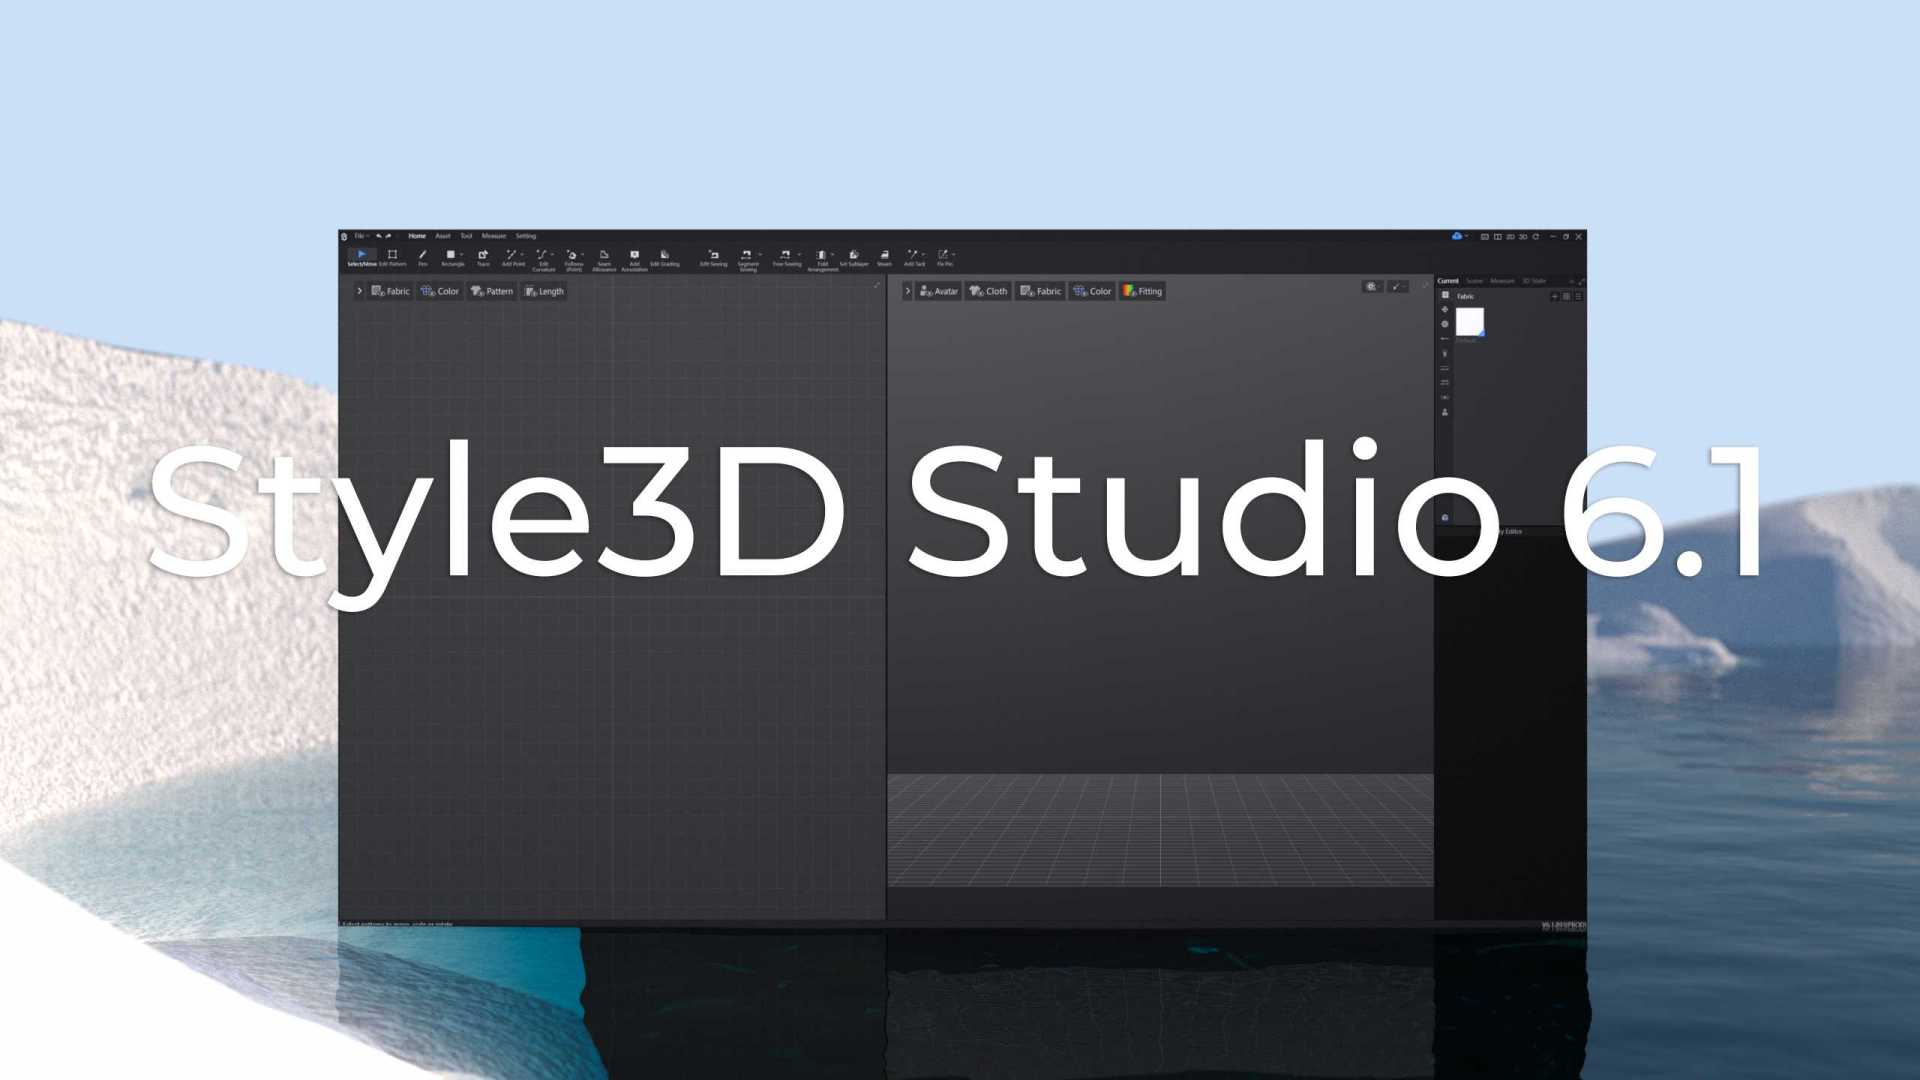 Style3D Studio 6.1 发版